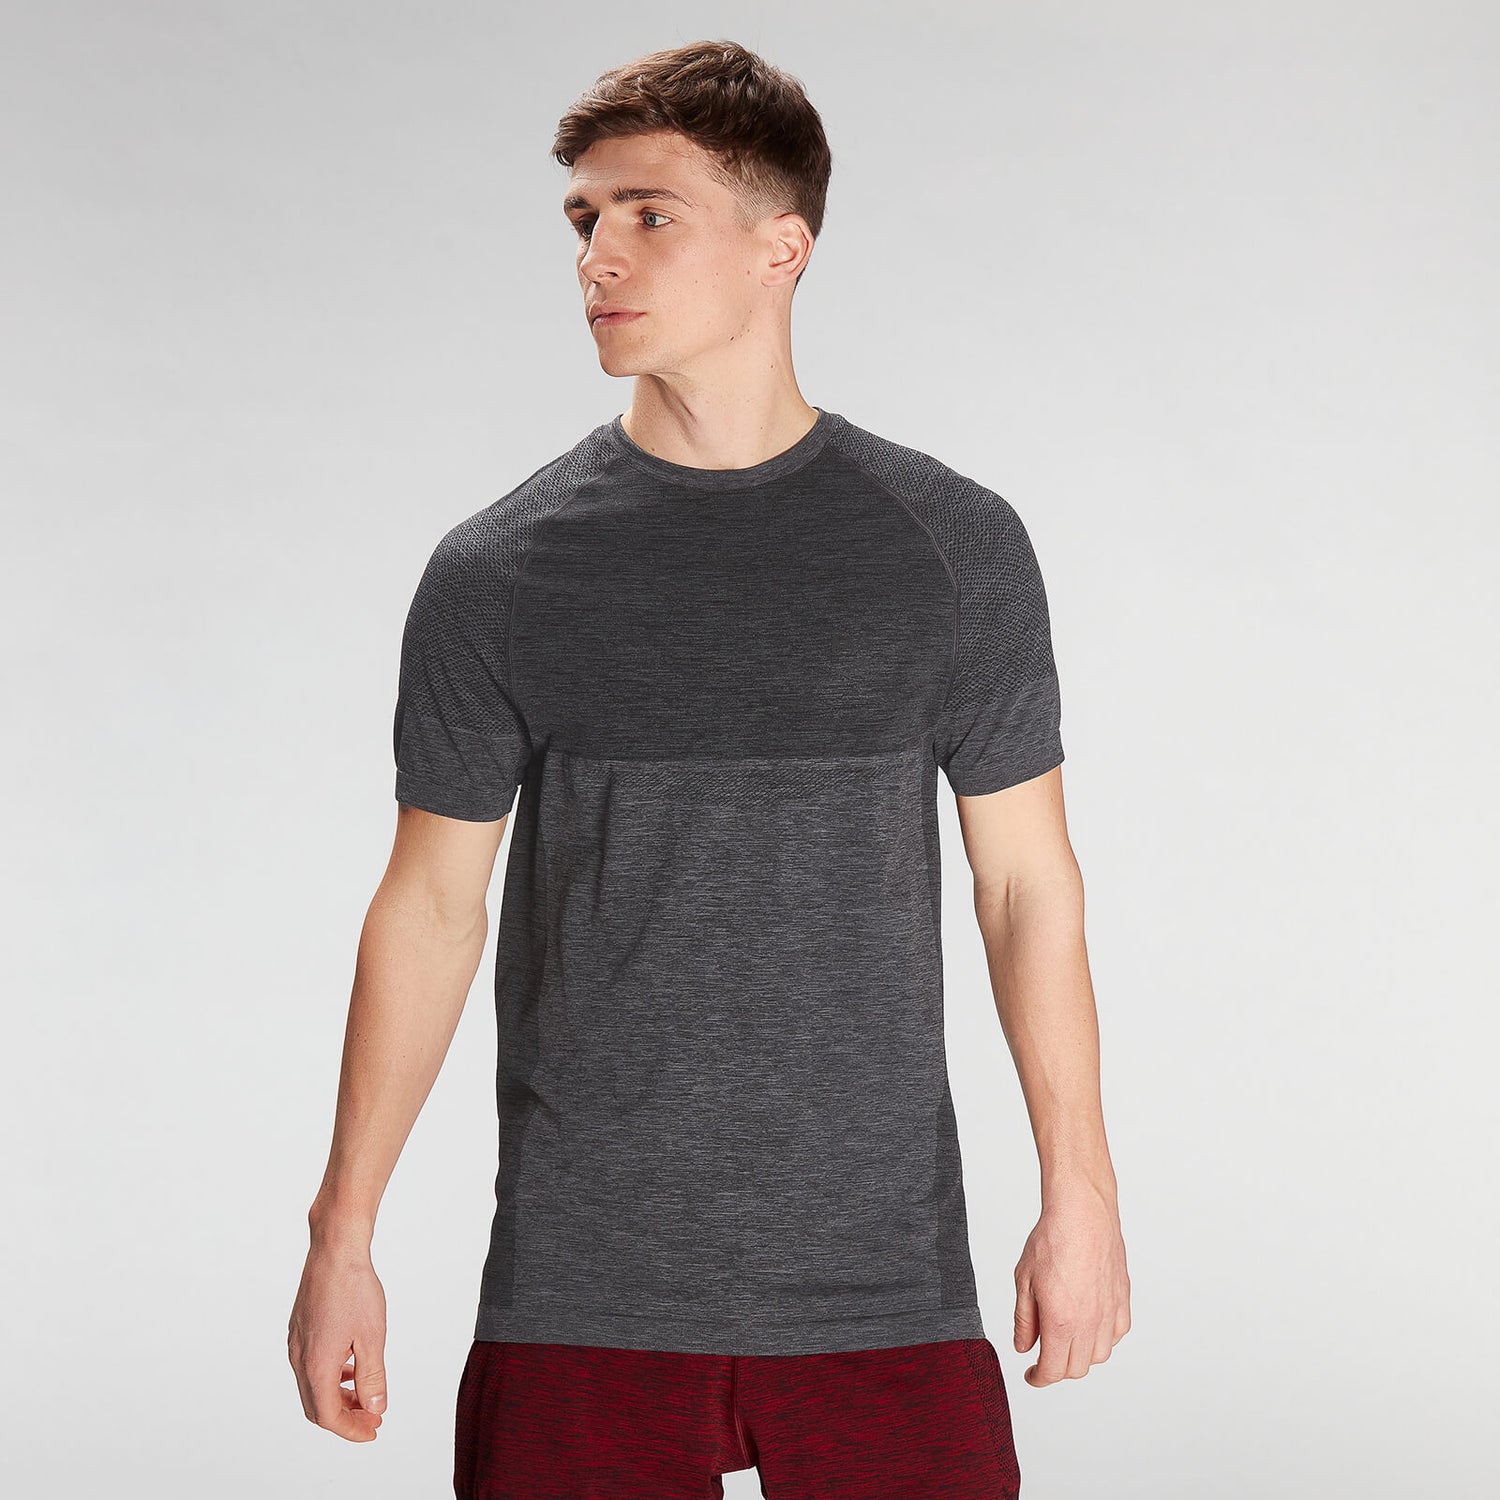 Miesten MP Essential Seamless Short Sleeve T-Shirt − Storm Grey Marl - XS